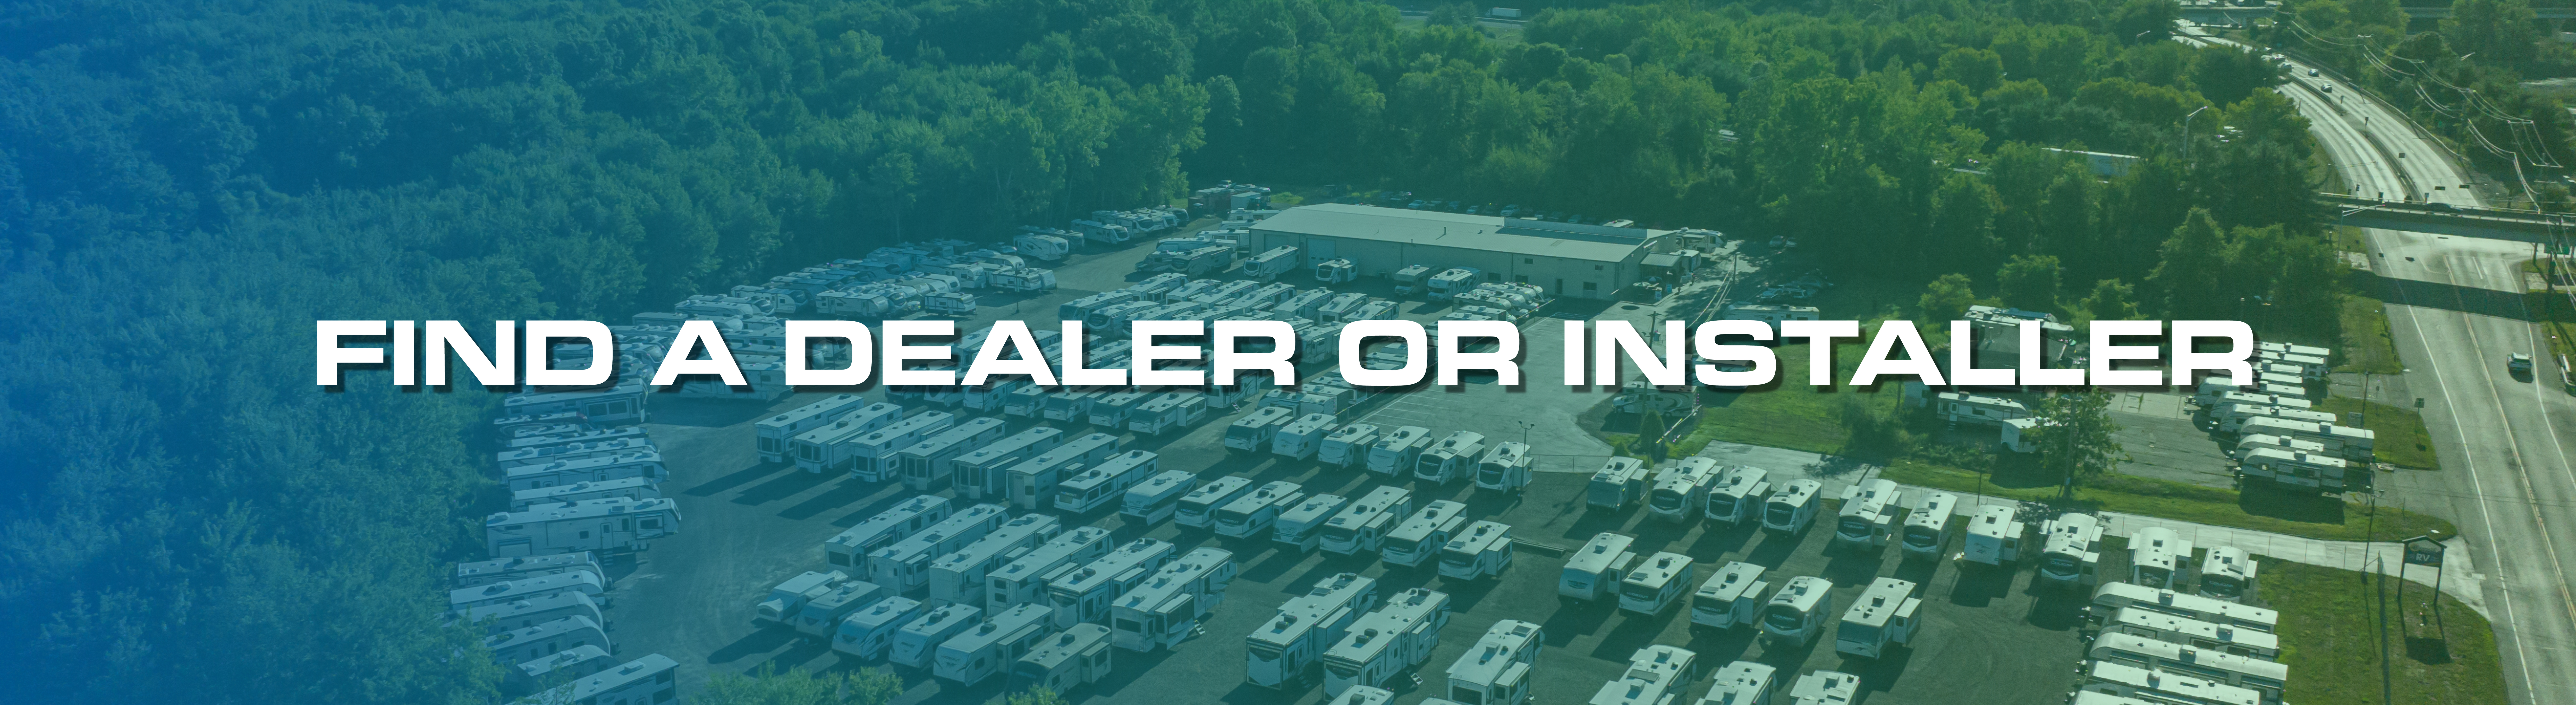 "Find a Dealer Or Installer" Over RV Dealership